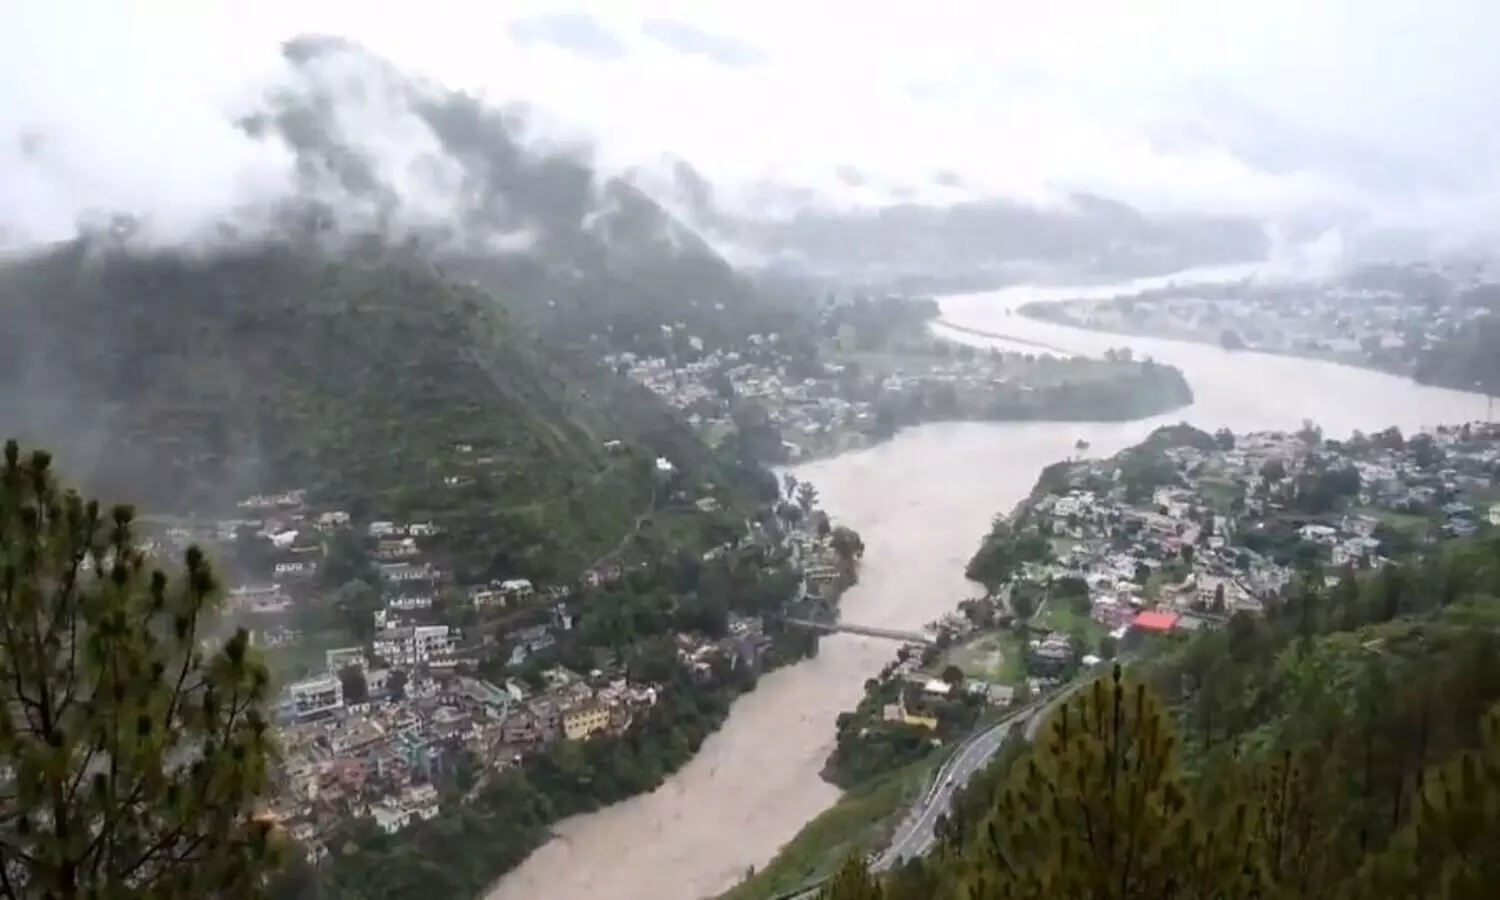 Uttarakhand Monsoon: भारी बारिश से ऊफान पर नदियां, अगले 72 घंटे का अलर्ट जारी, देखें वीडियो